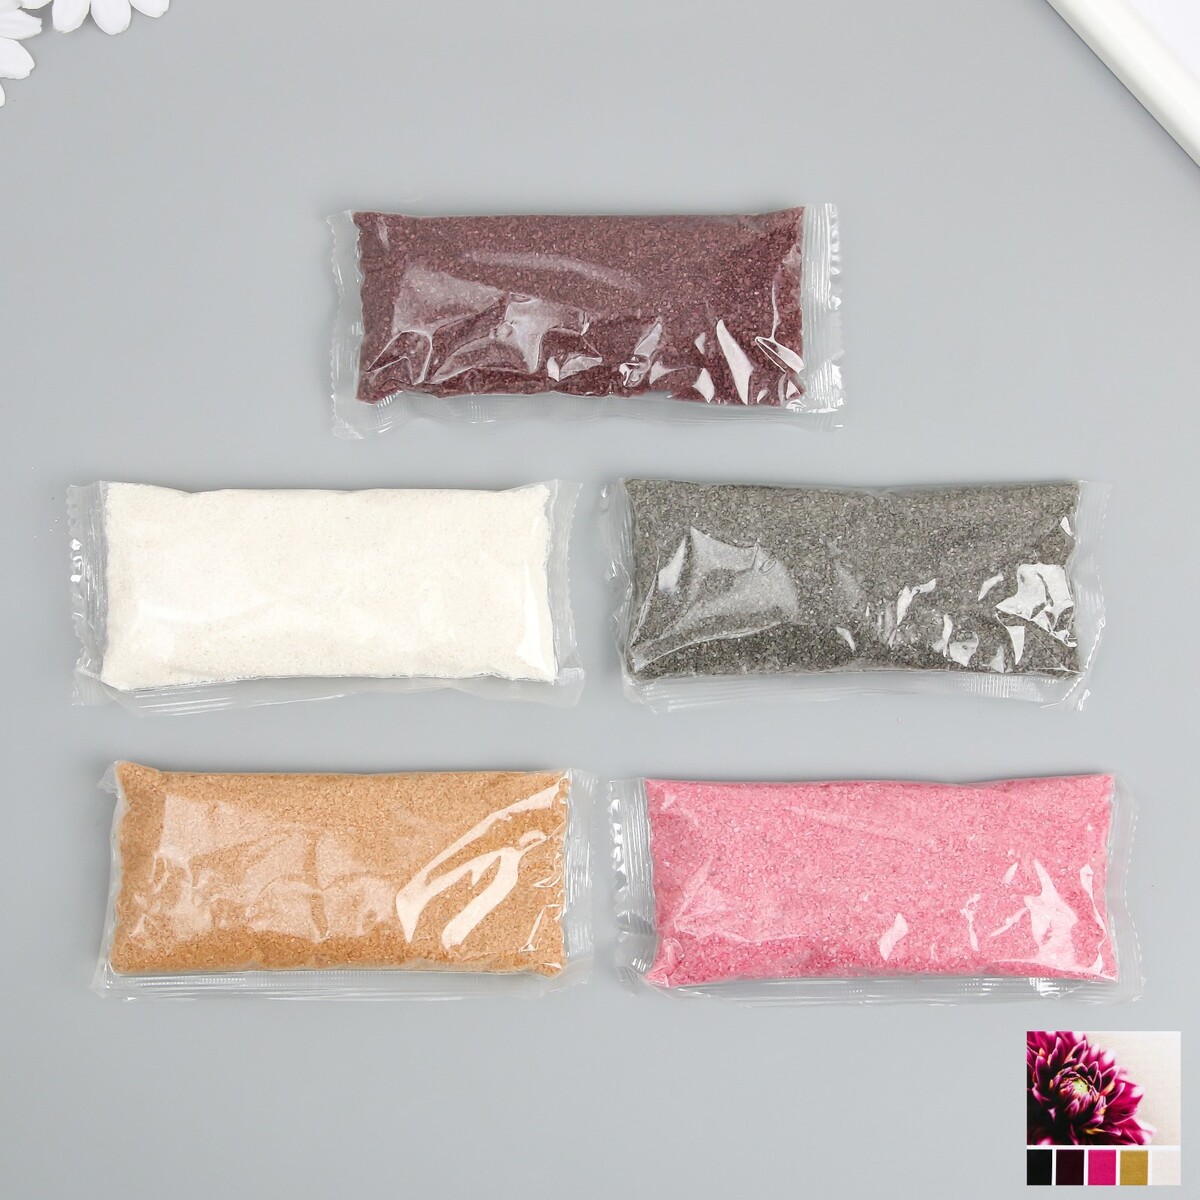 Набор цветного песка №10, 5 цветов, по 100 гр набор игровой для песка battat в фиолетовой сумке 68704